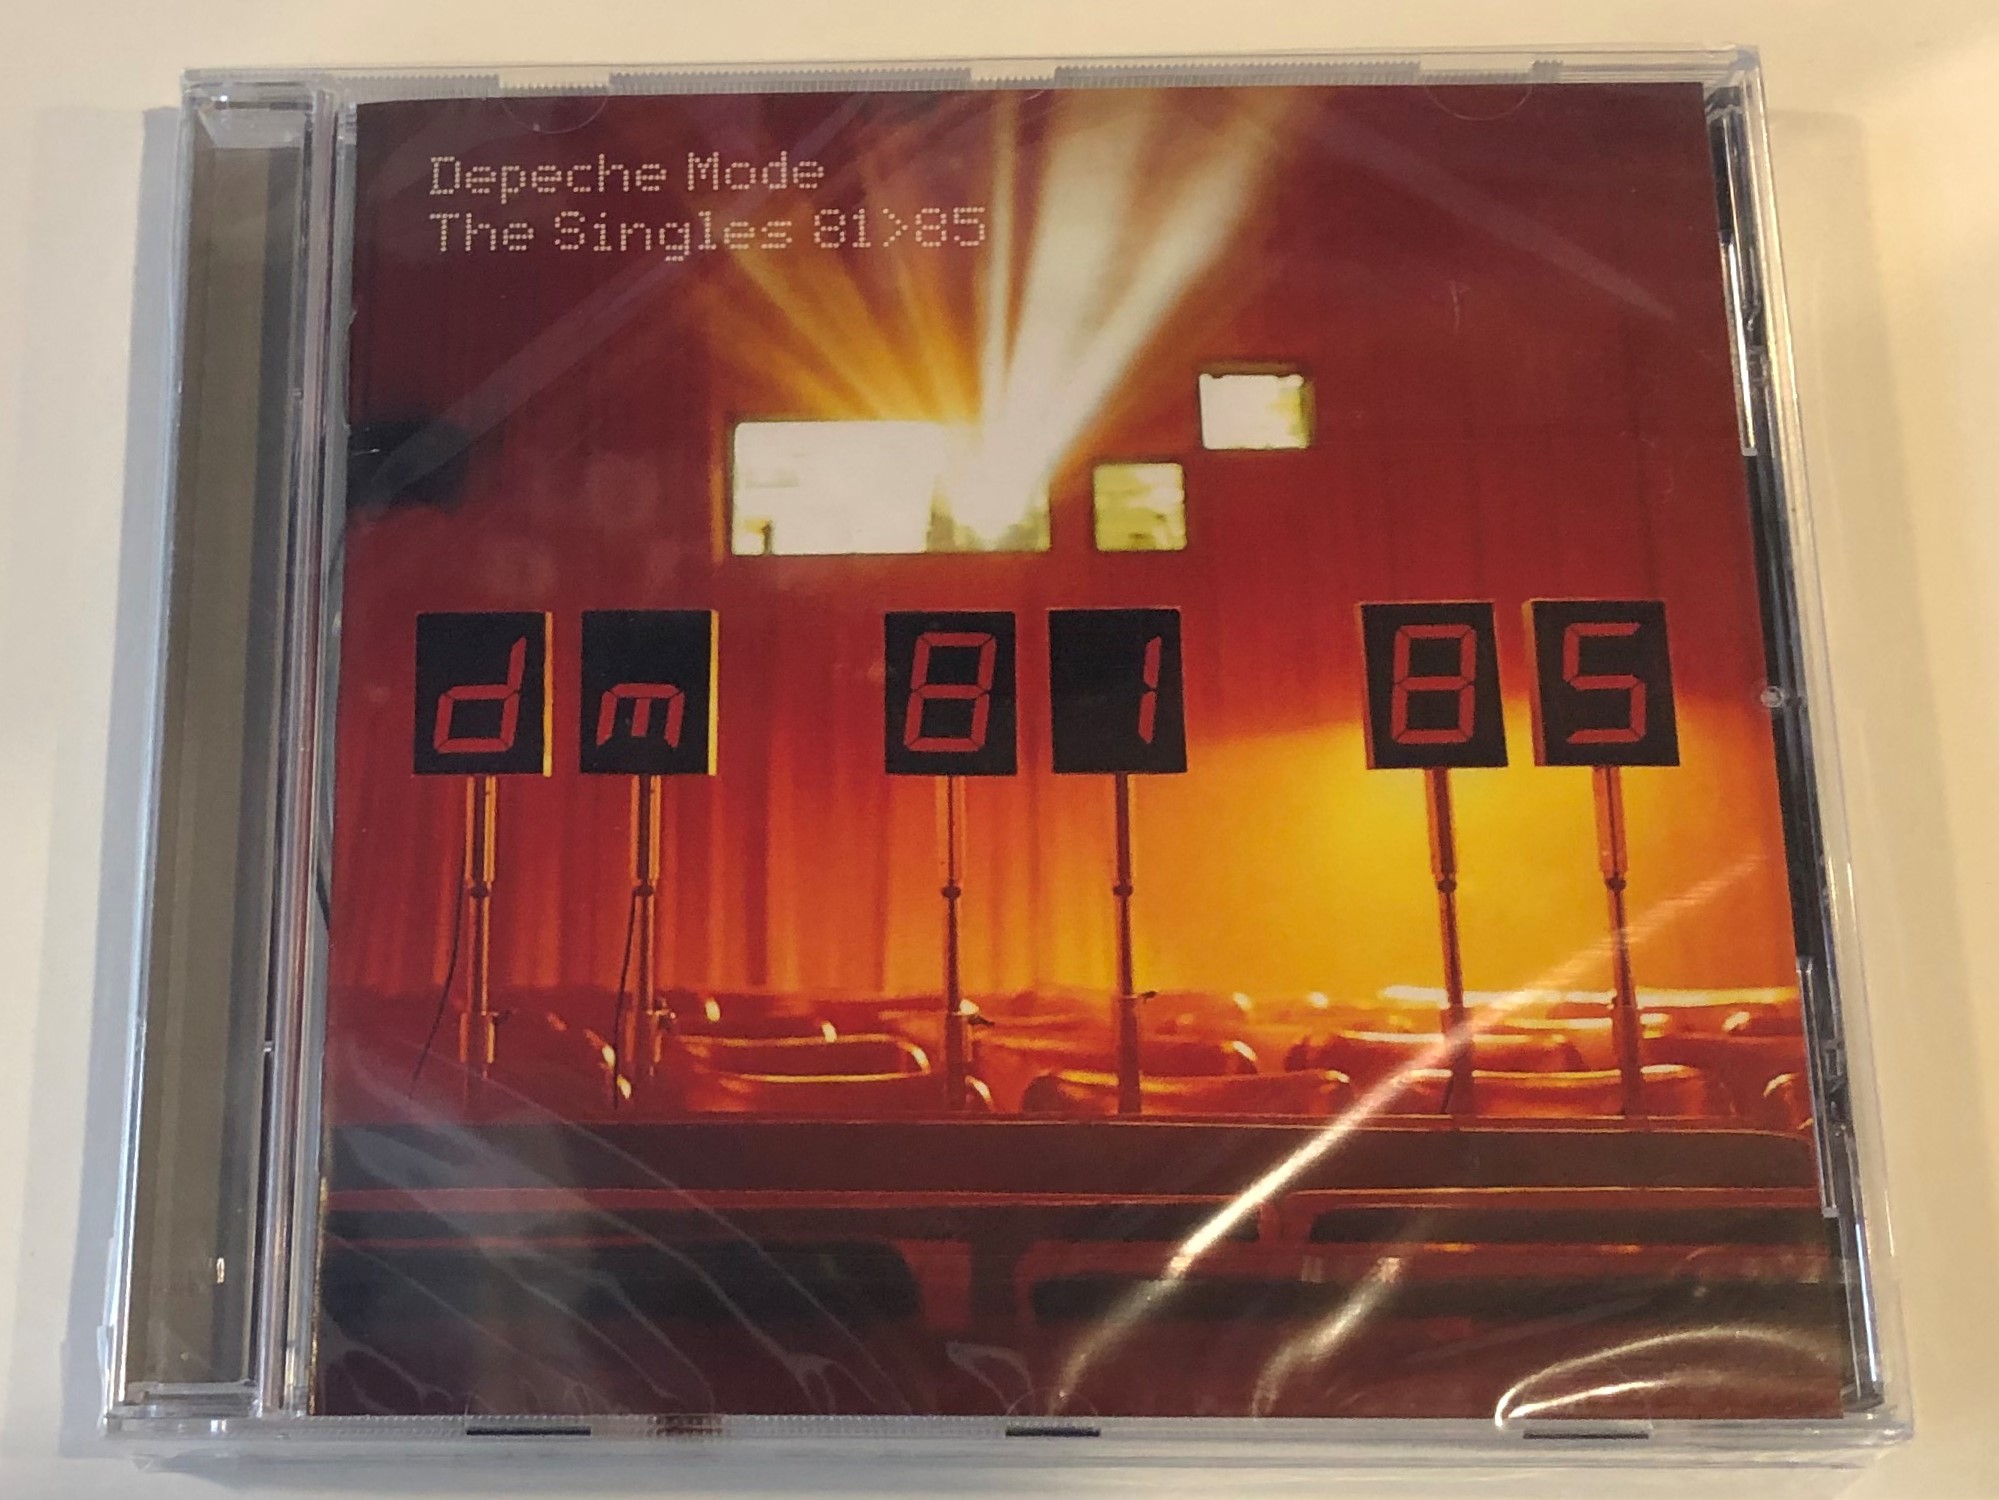 depeche-mode-the-singles-8185-sony-music-audio-cd-1998-88883751272-1-.jpg